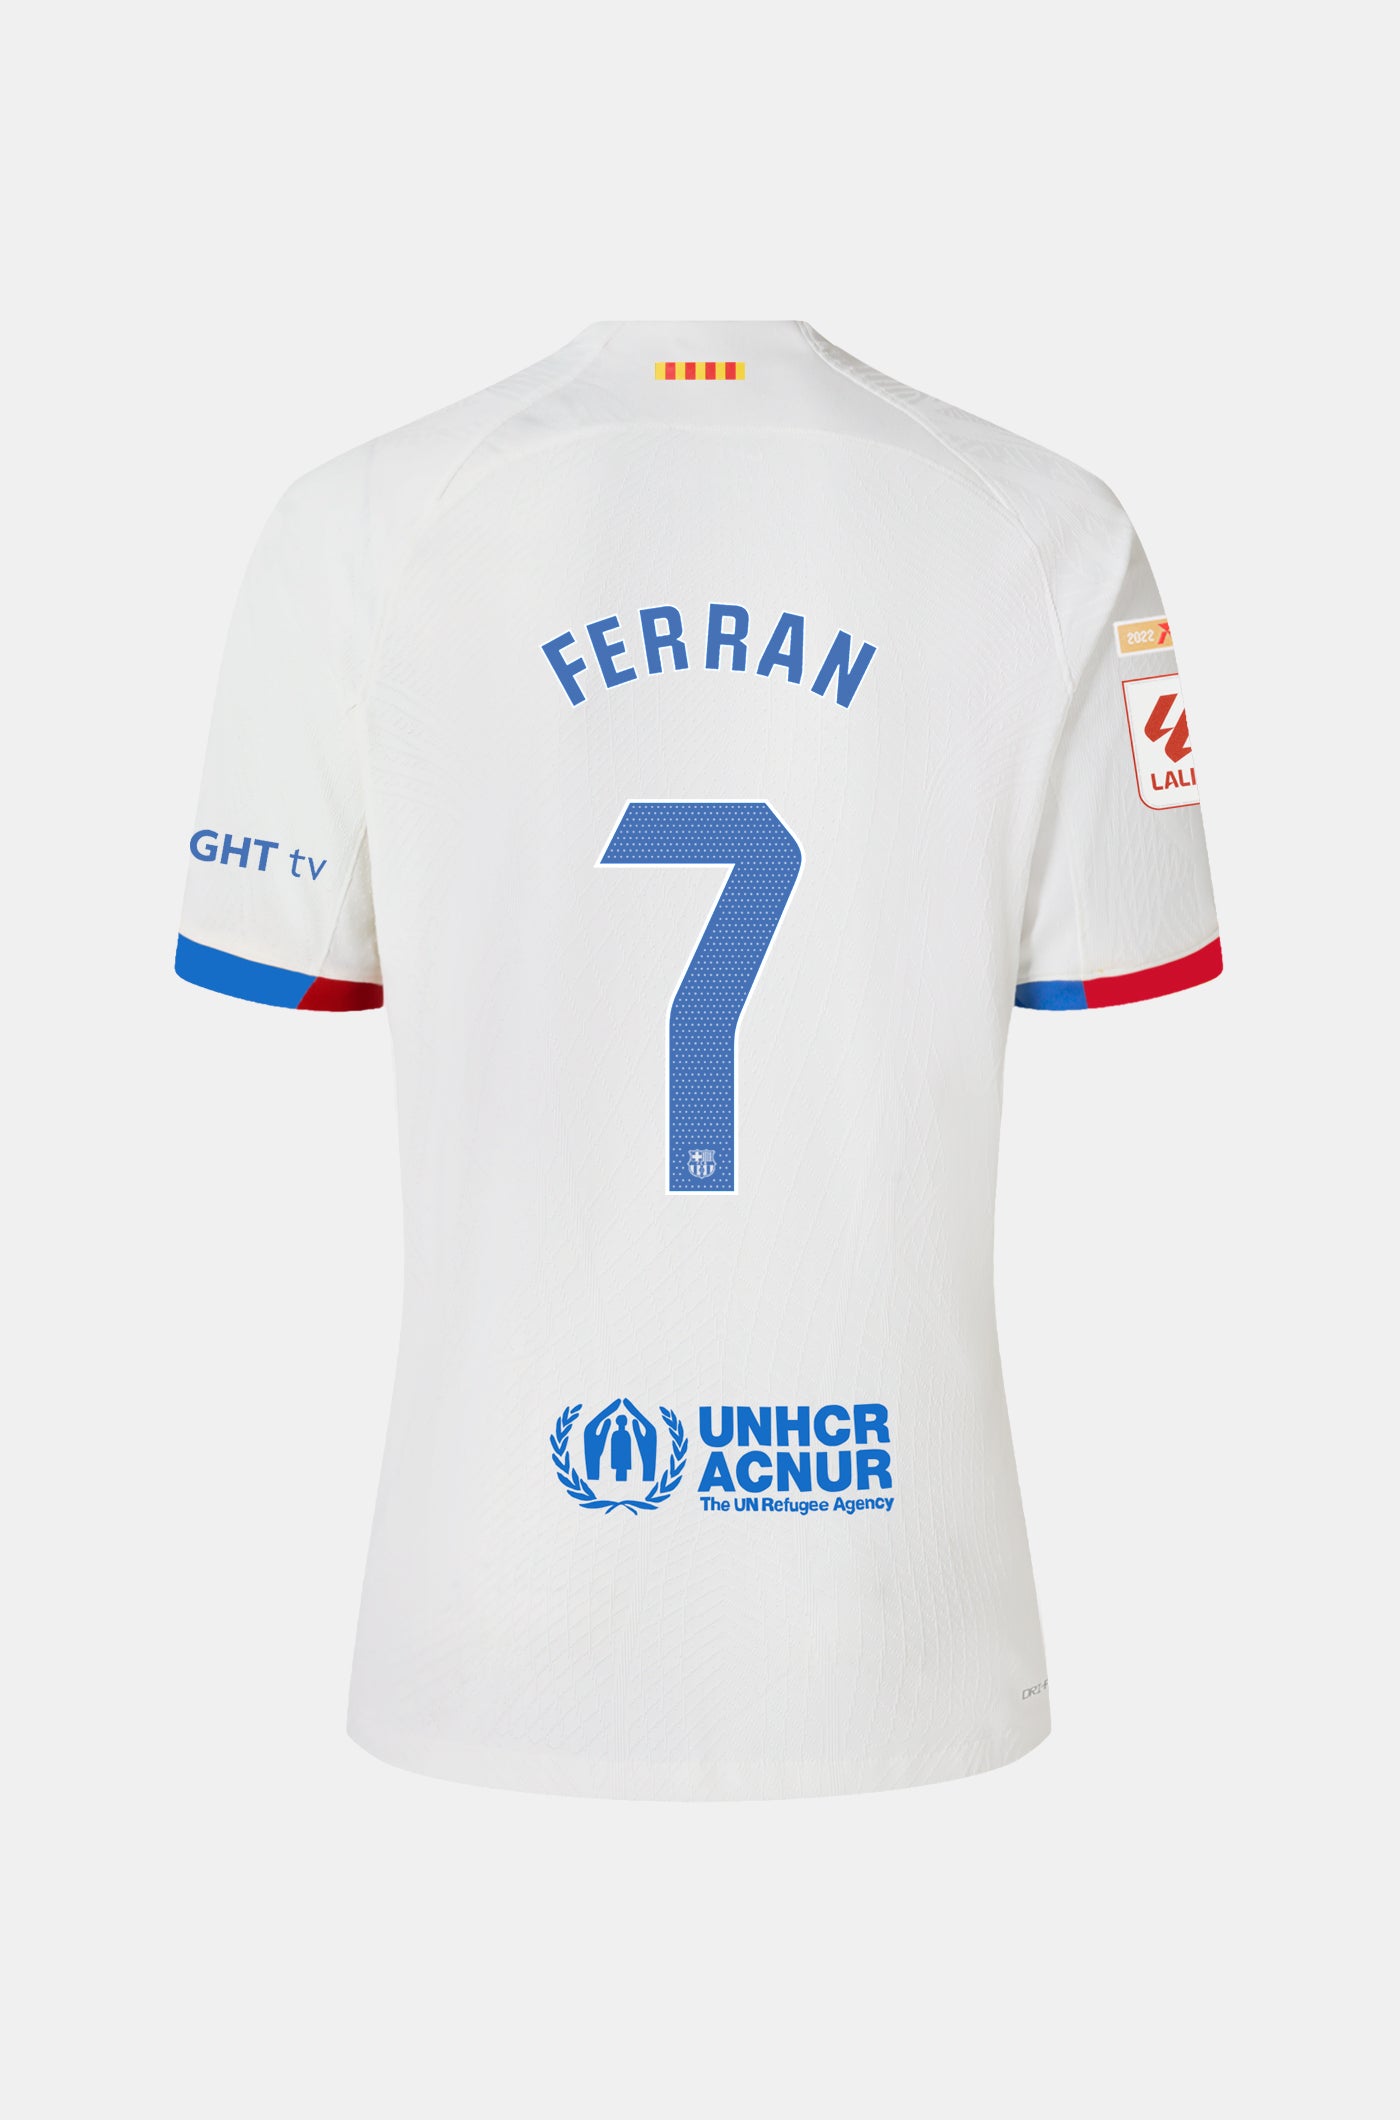 LFP FC Barcelona away shirt 23/24 - Women - FERRAN